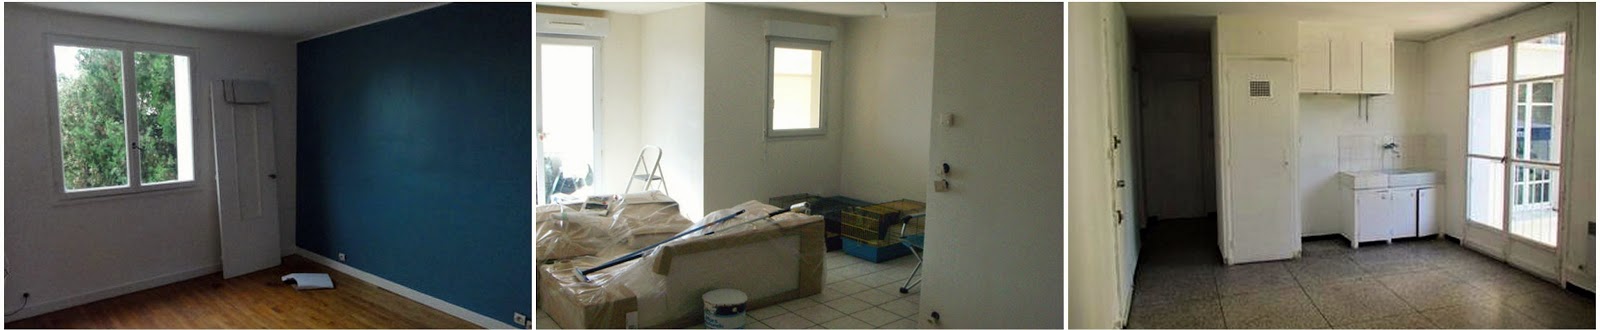 renovation peintre immobilier